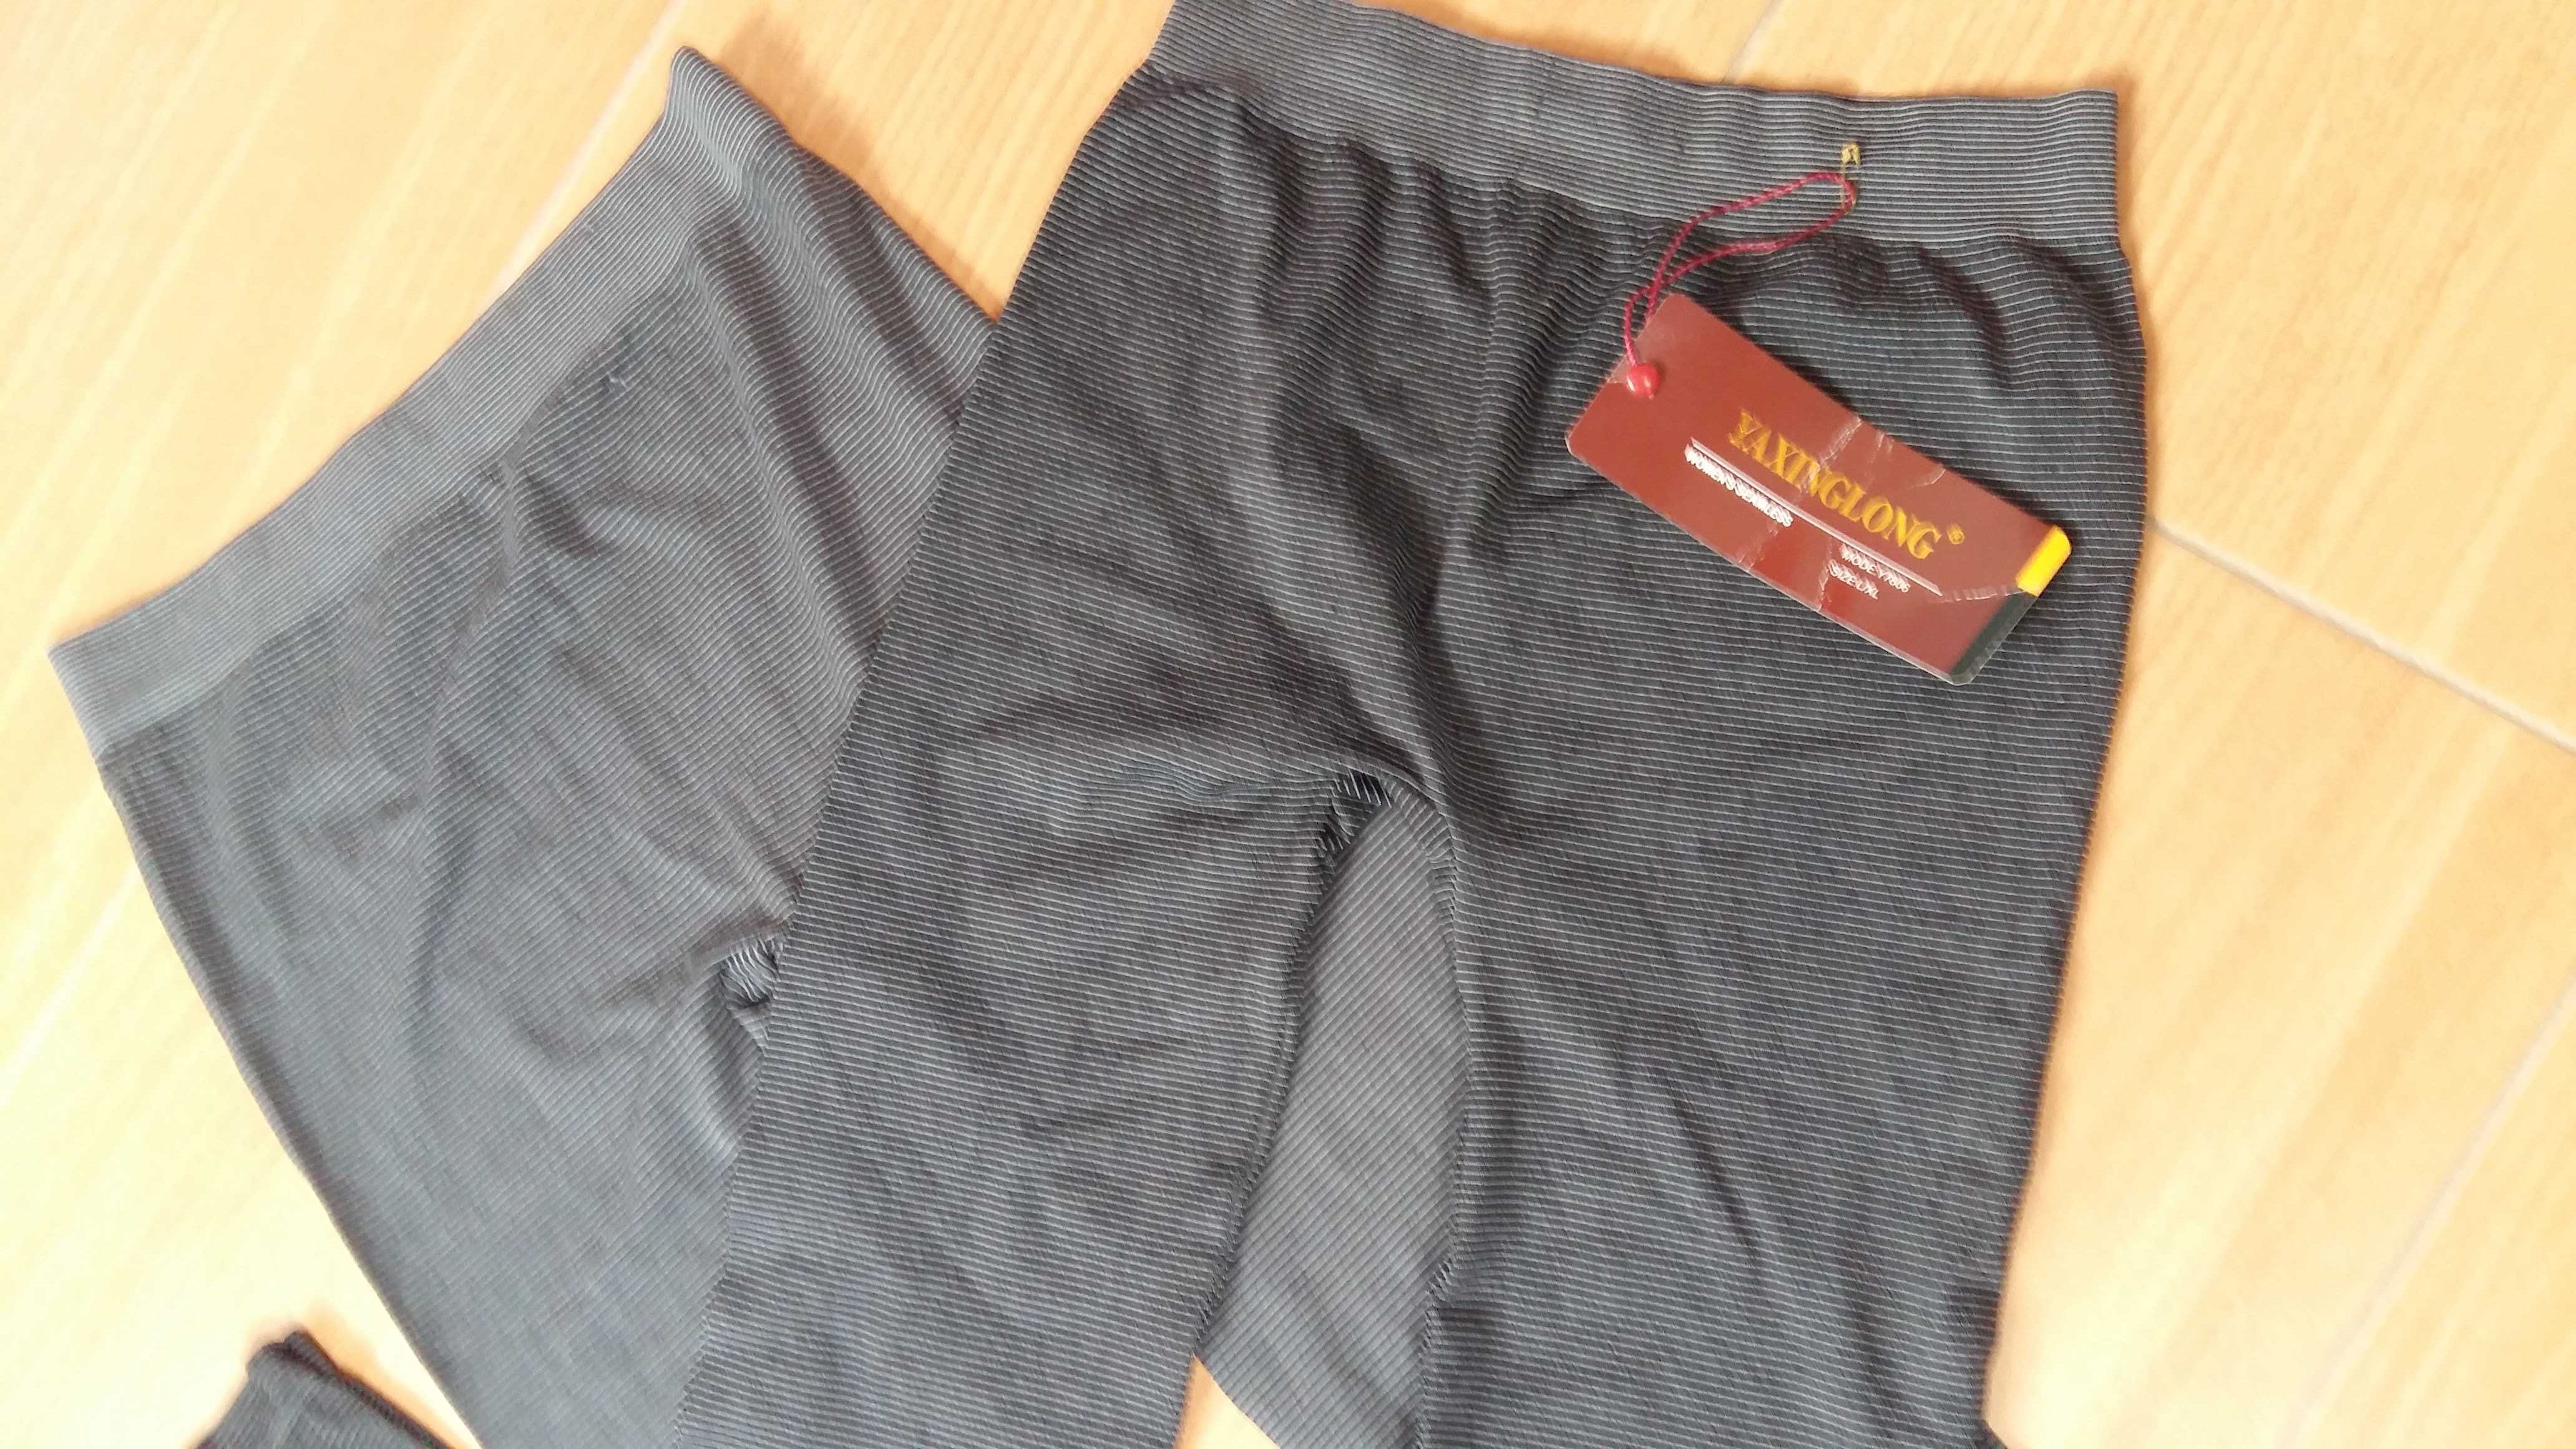 Leginsy L-XL 2pak szare elastyczne nowe getry,spodnie,rajstopy